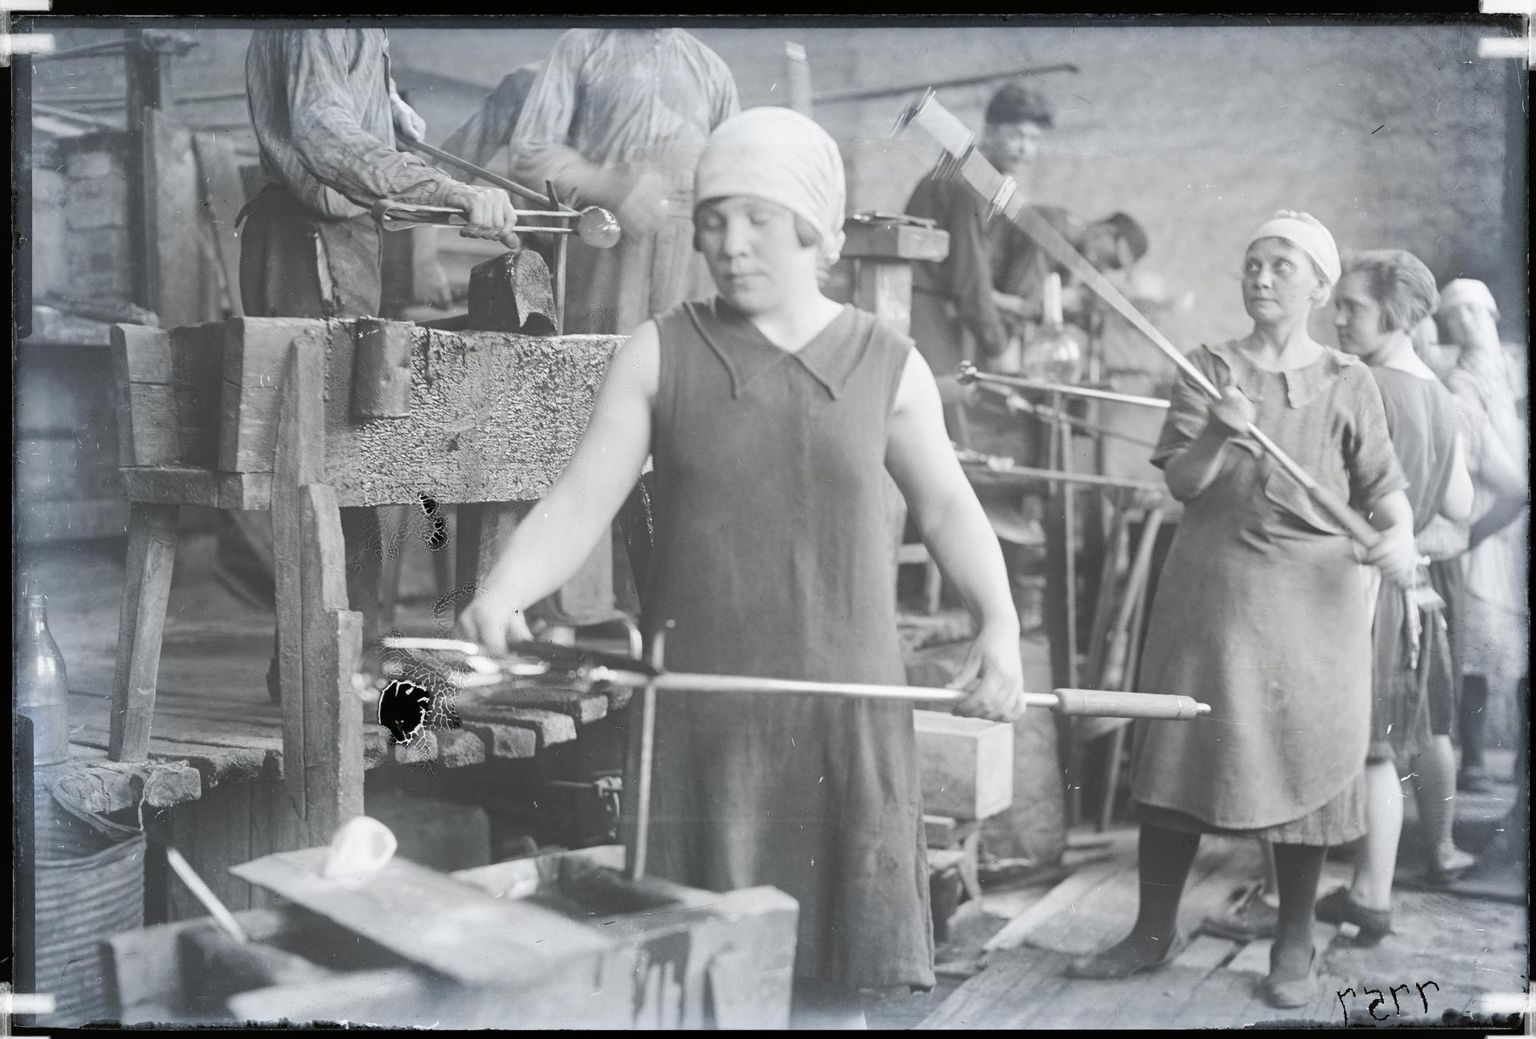 Klaasipuhujad Lorupi klaasivabrikus 1930. aastatel.